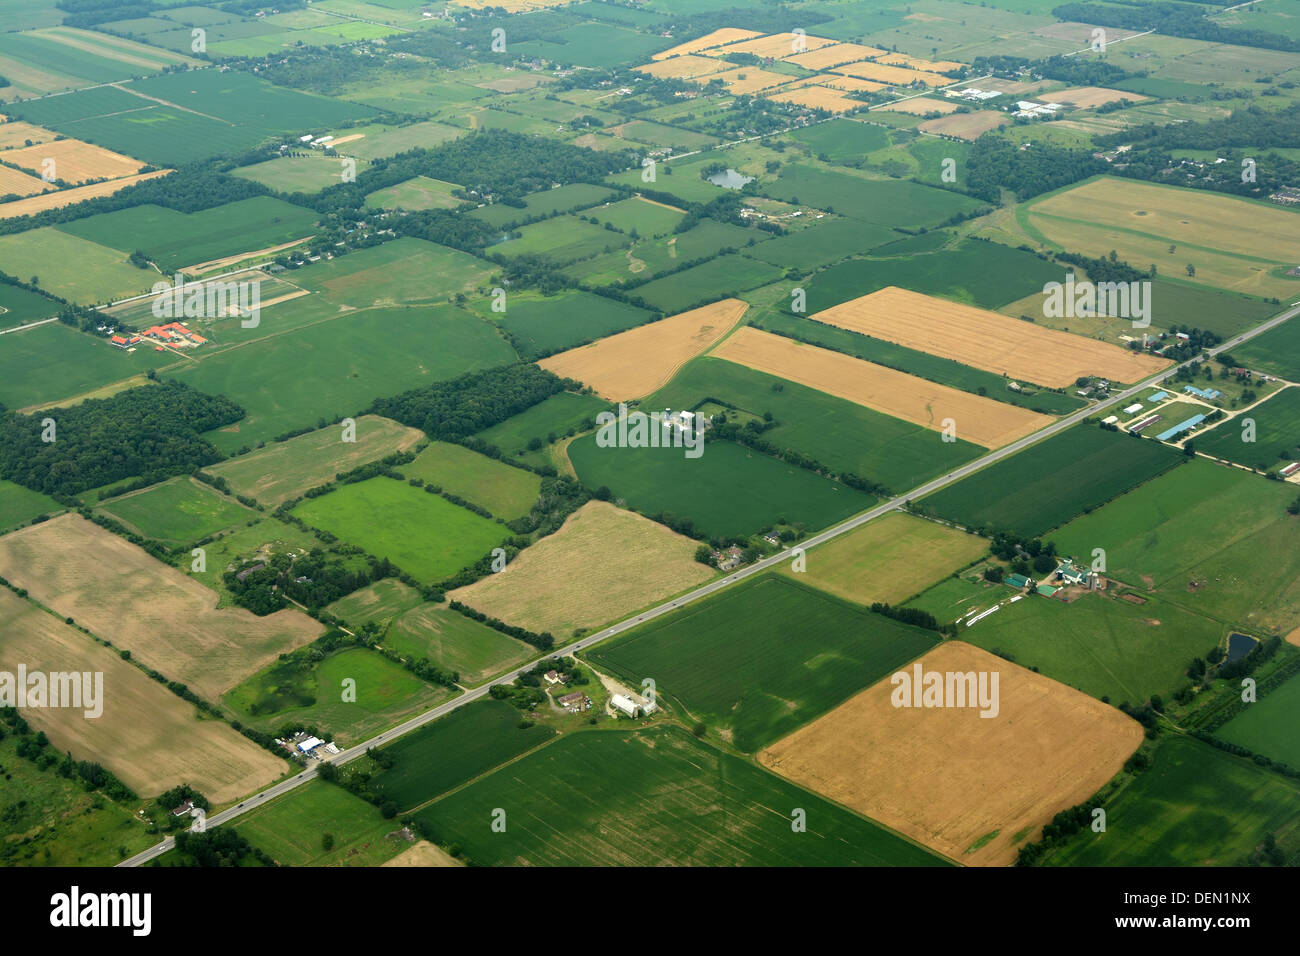 Farm land Ontario, Canada Stock Photo